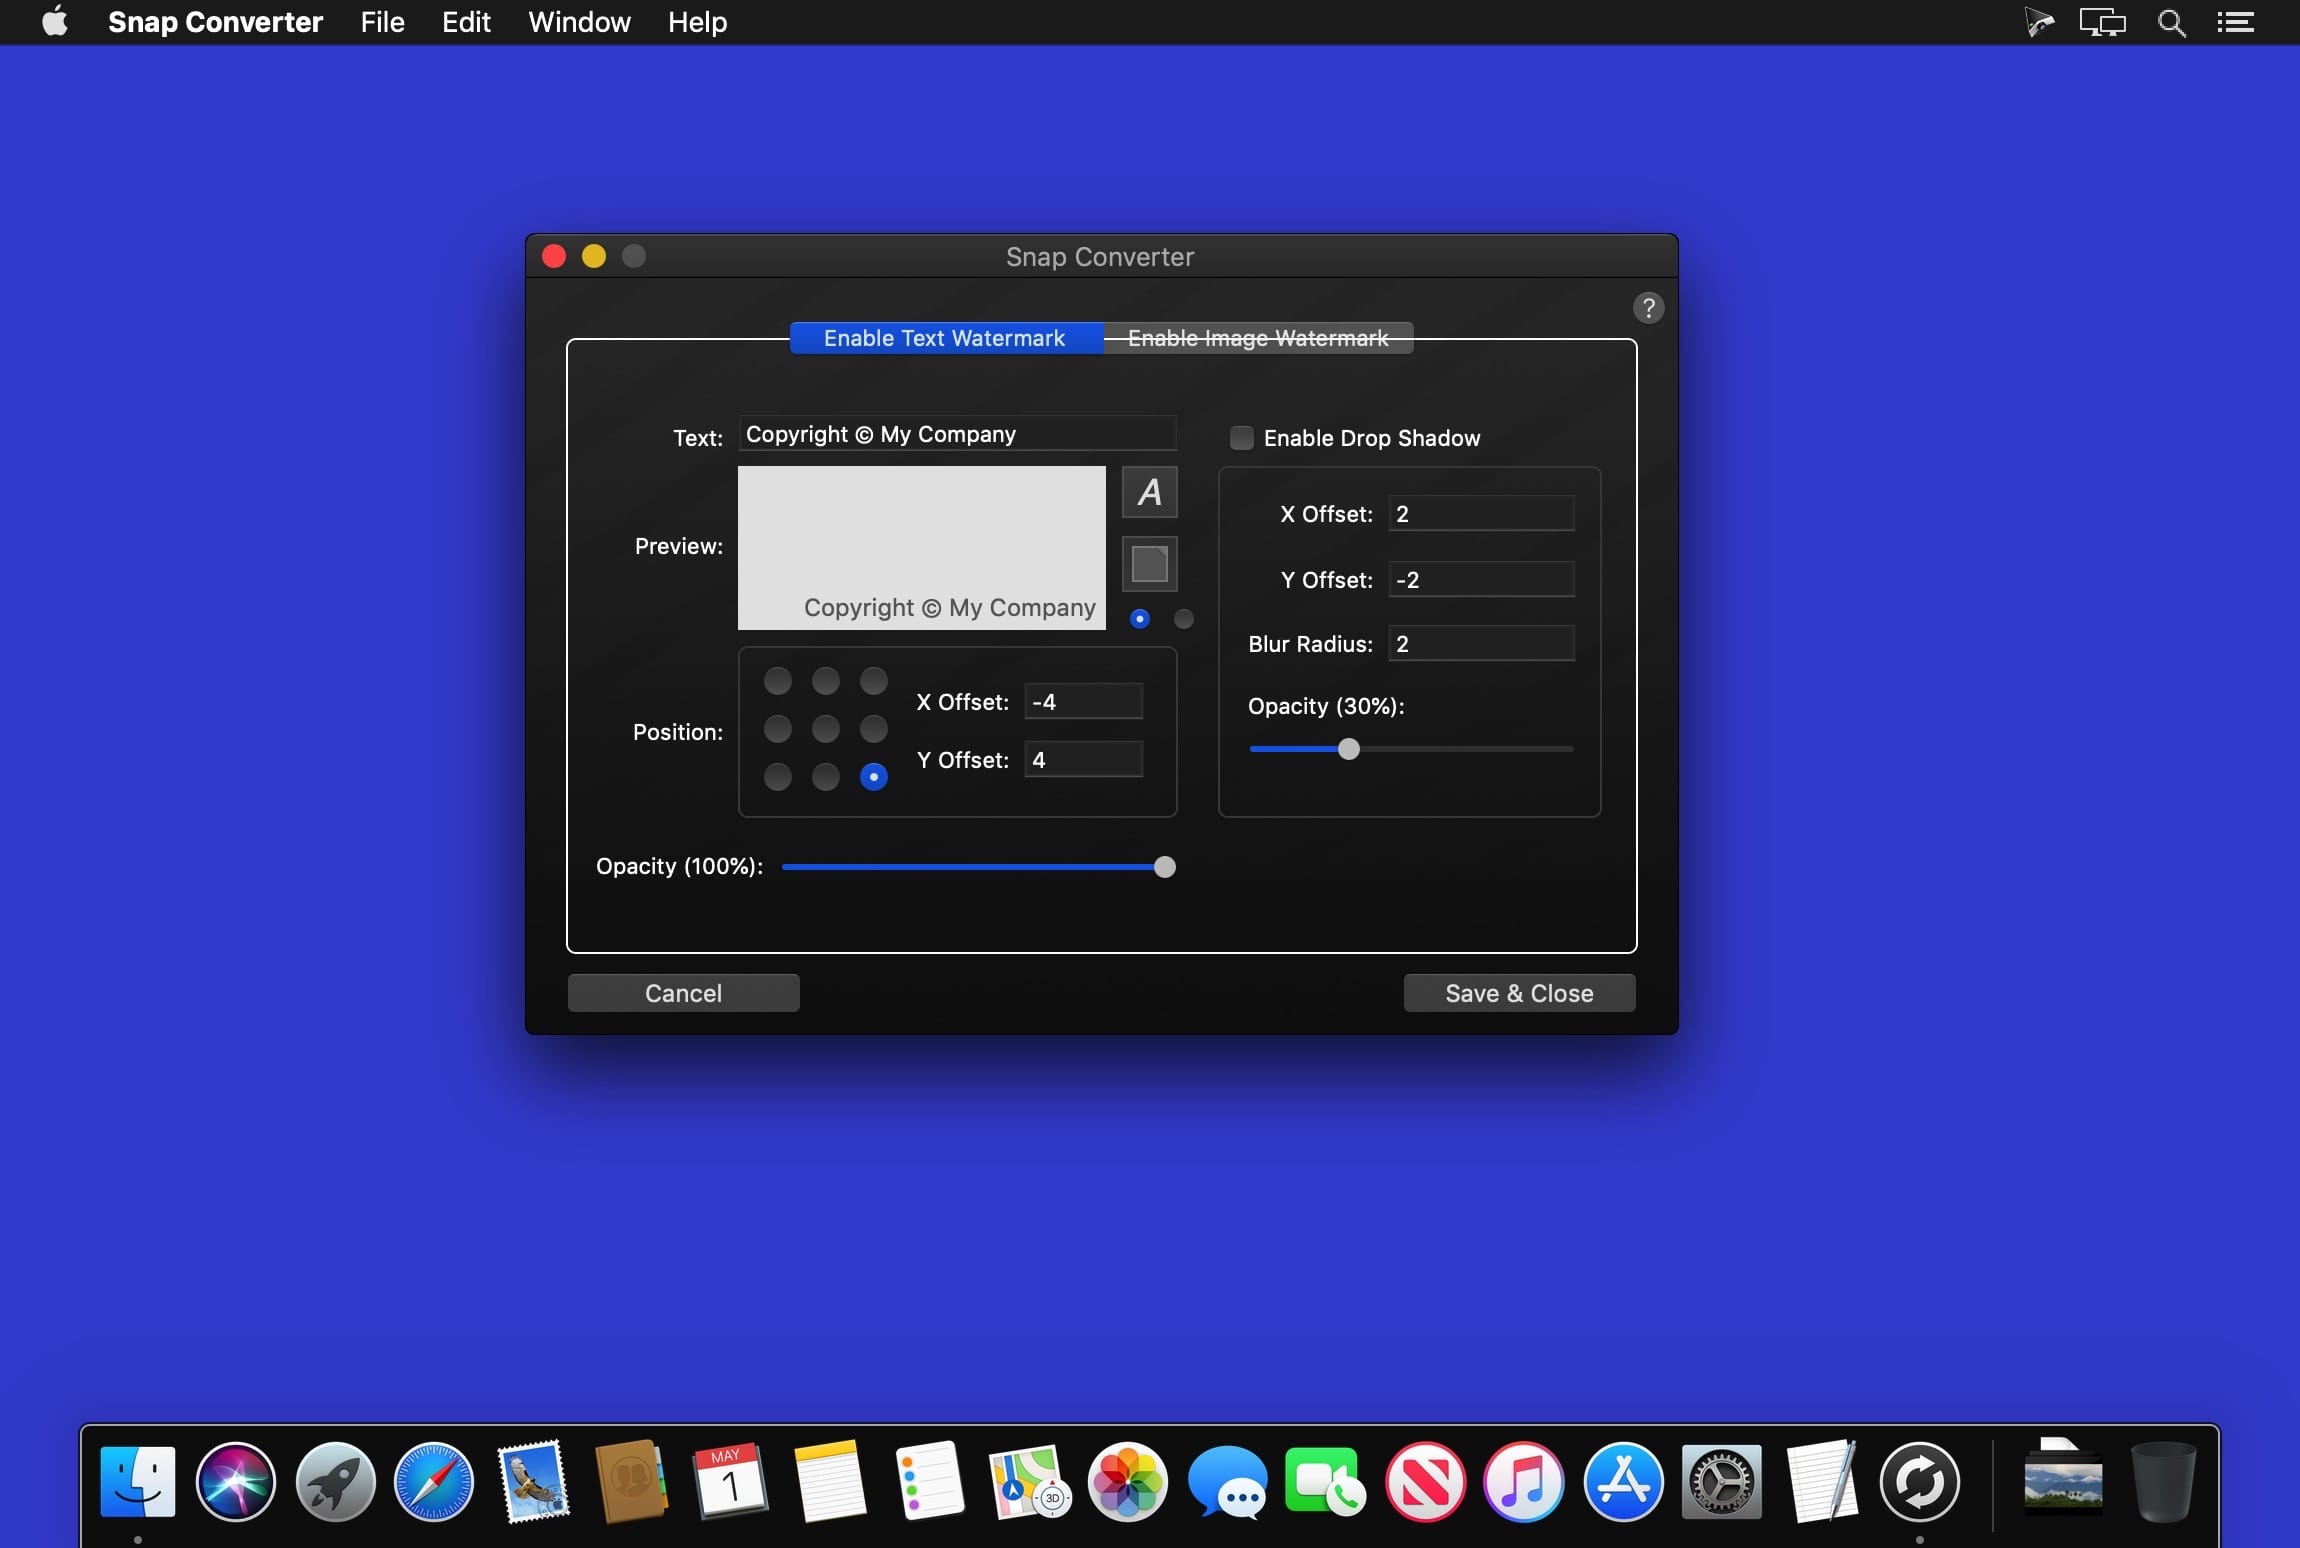 Adobe DNG Converter Mac os x 10.6.8